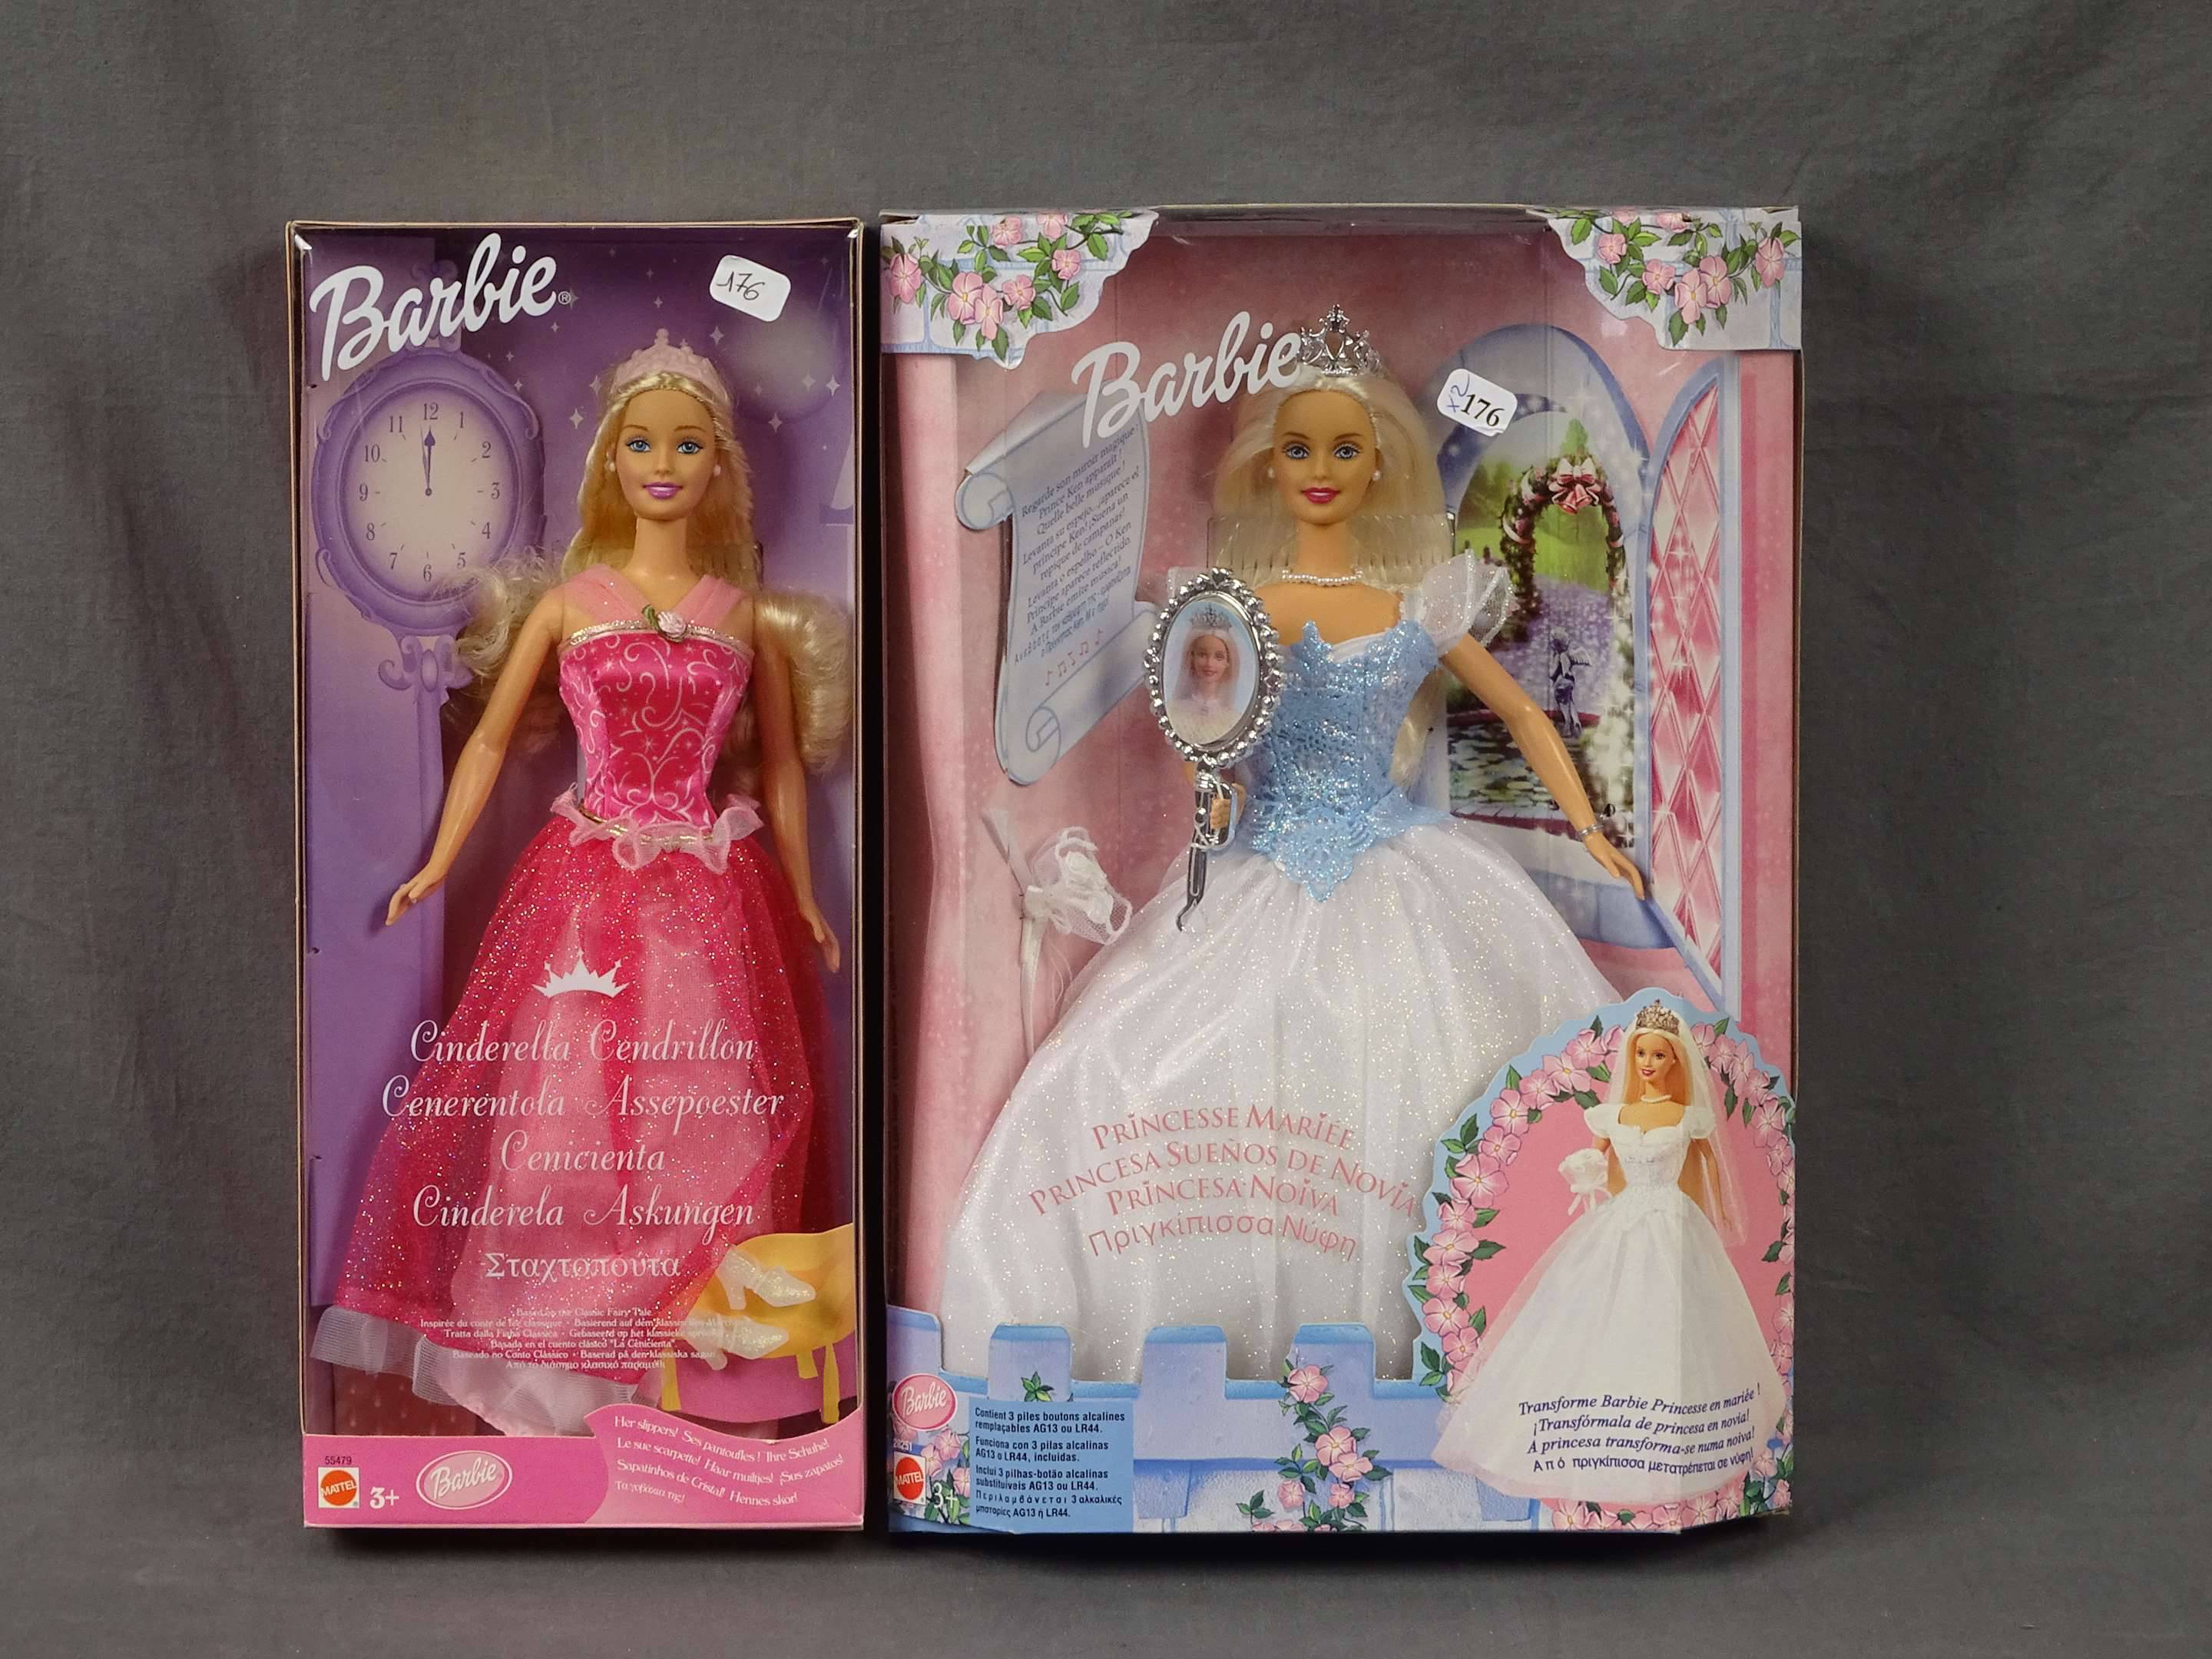 Poupée Barbie princesse de l'île merveilleuse 2007 Mattel- EN BOITE